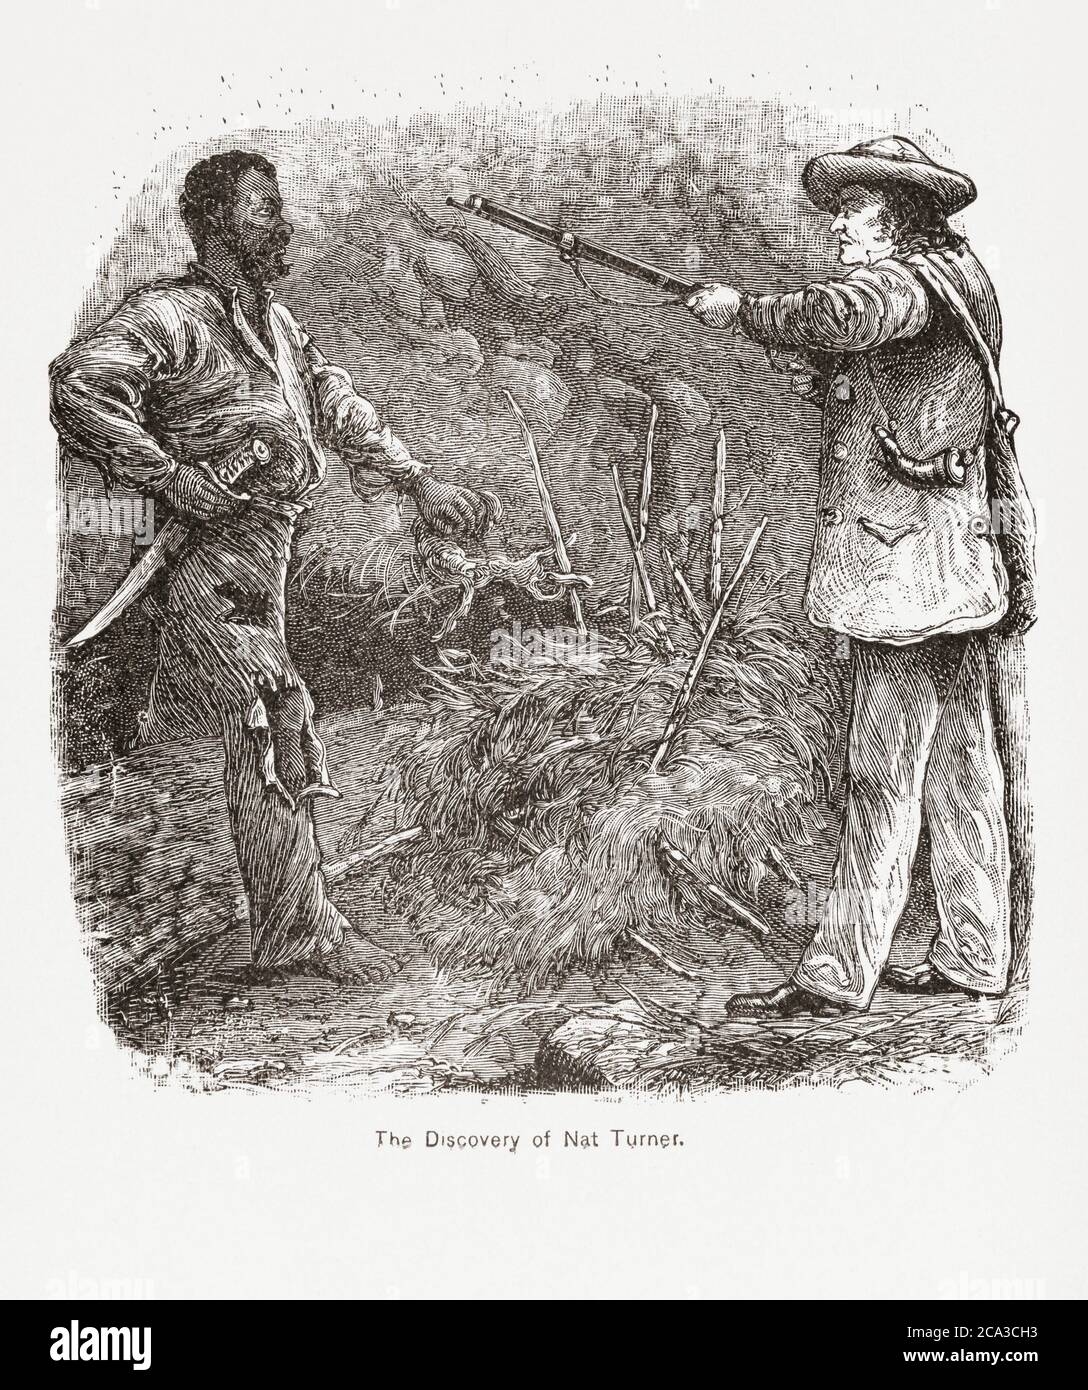 La captura de Nat Turner. NAT Turner, de 1800 a 1831 años, fue un afroamericano nacido en la esclavitud que instigó una rebelión contra los esclavistas blancos. Foto de stock